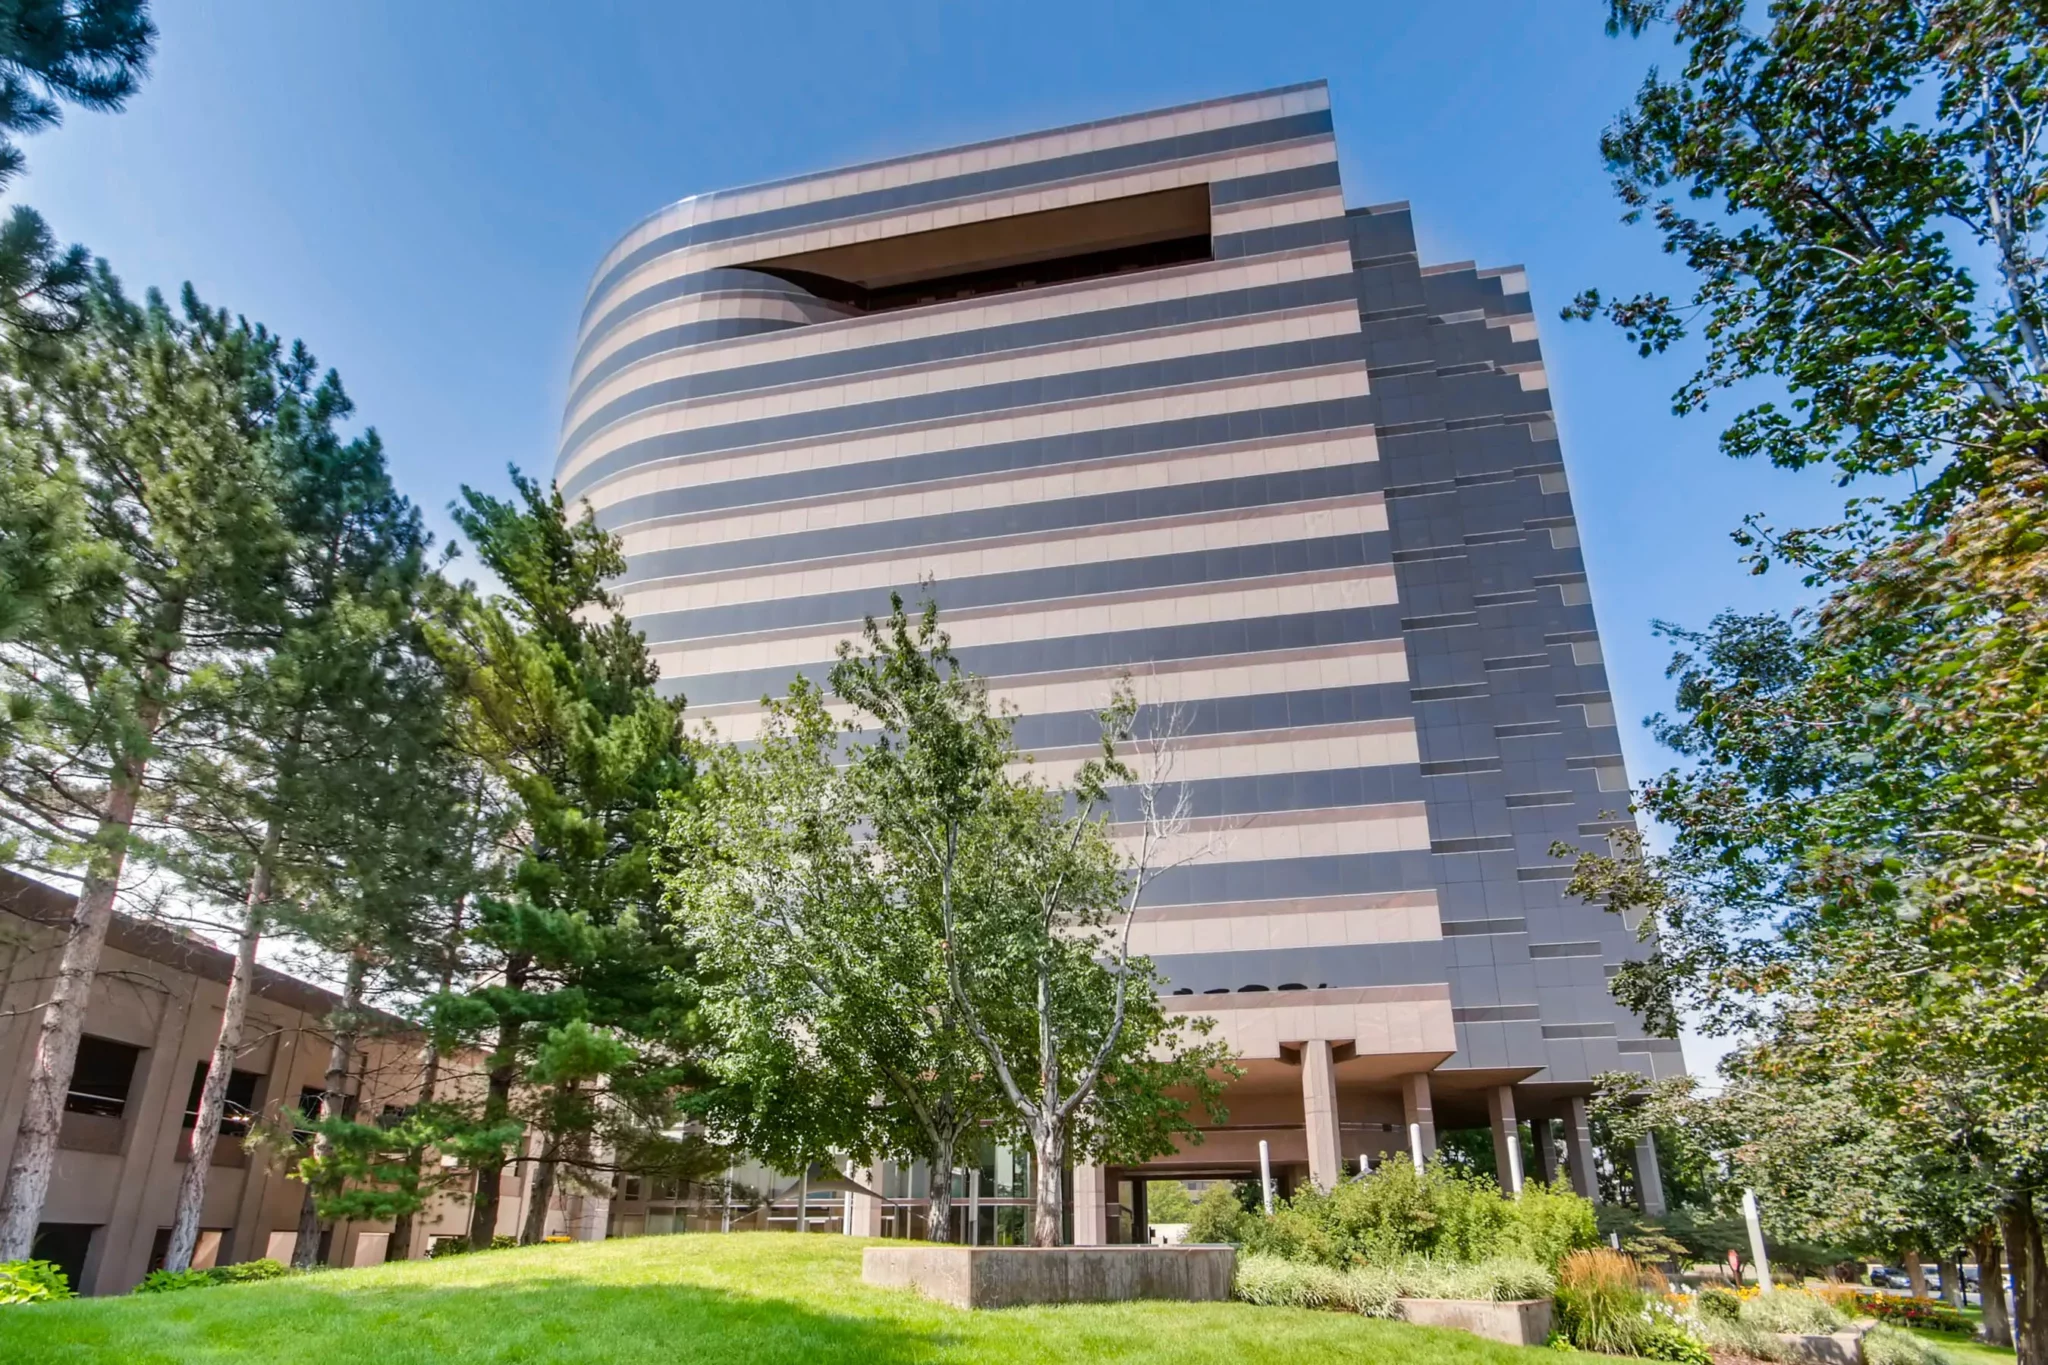 OneDTC in Denver sells for $55.6 million